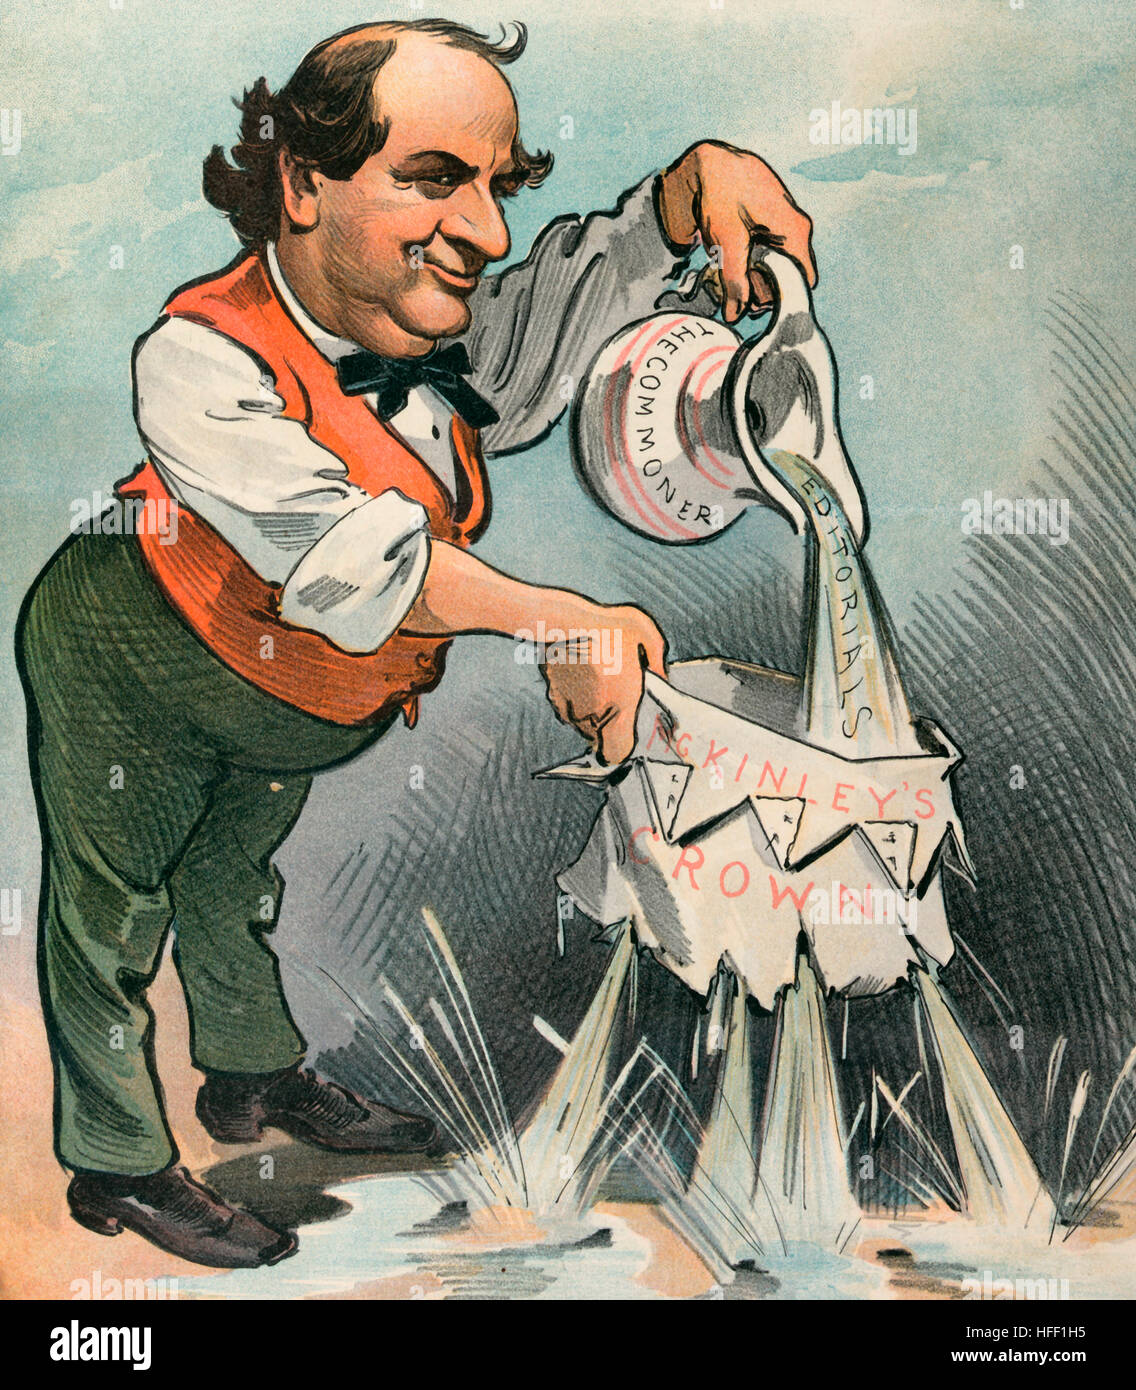 Die Bryan gefertigte Krone; -Es wird nicht stichhaltig.  Politische Karikatur zeigt William Jennings Bryan hält einen Krug mit der Aufschrift "The Commoner" strömendes Wasser mit der Bezeichnung "Leitartikel" in eine Papierkrone mit der Bezeichnung "McKinleys Krone," voller Löcher und undichte Wasser überall. Juni 1901 Stockfoto